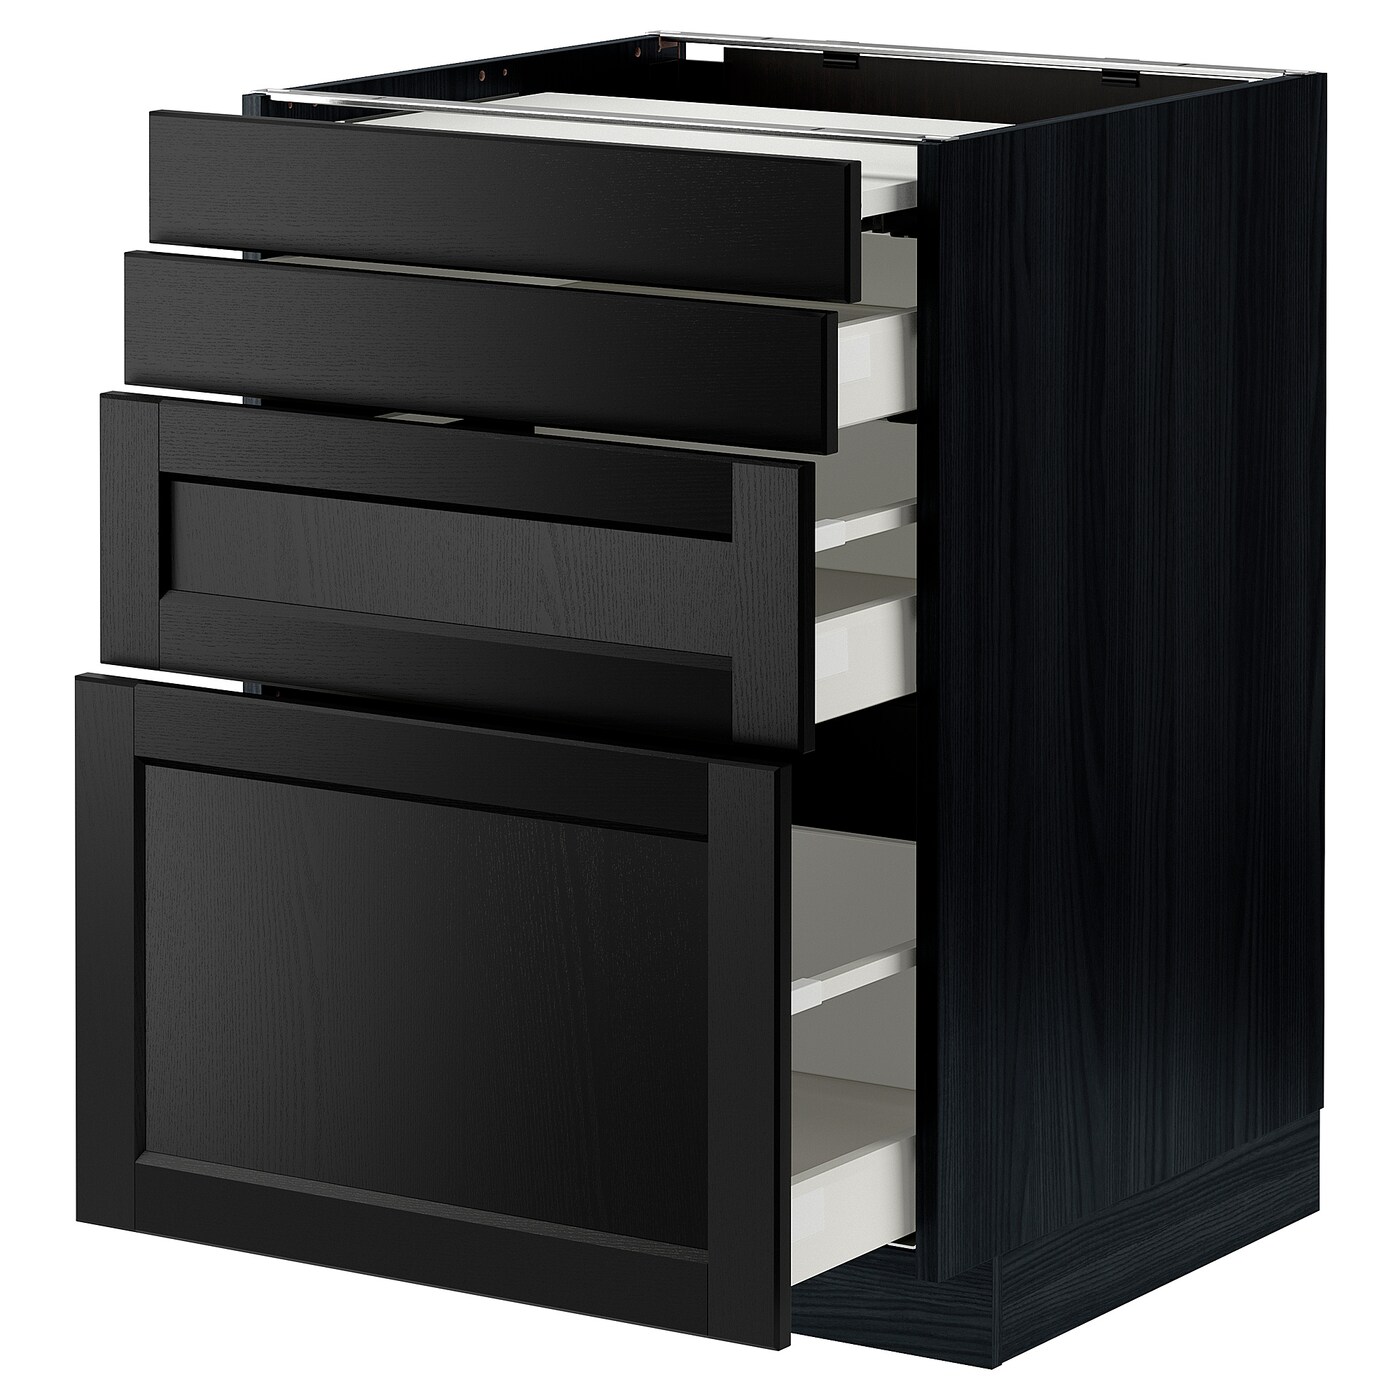 Напольный кухонный шкаф - IKEA METOD MAXIMERA, 88x62x60см, черный, МЕТОД МАКСИМЕРА ИКЕА